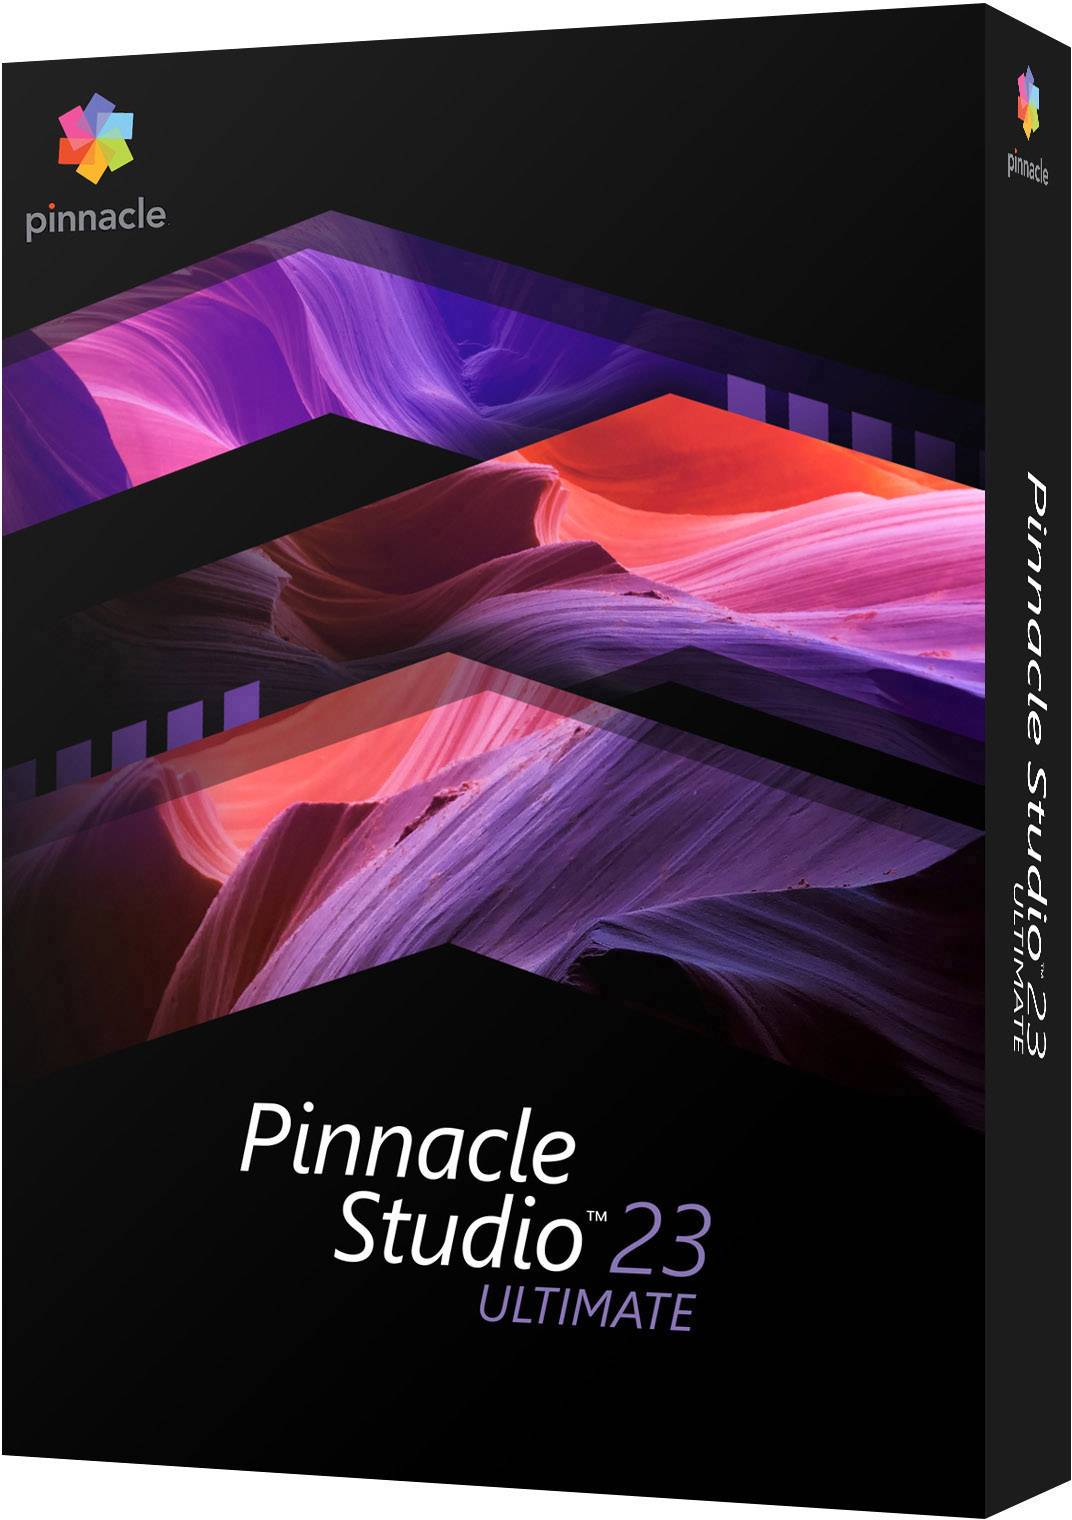 pinnacle studio 23 ultimate review